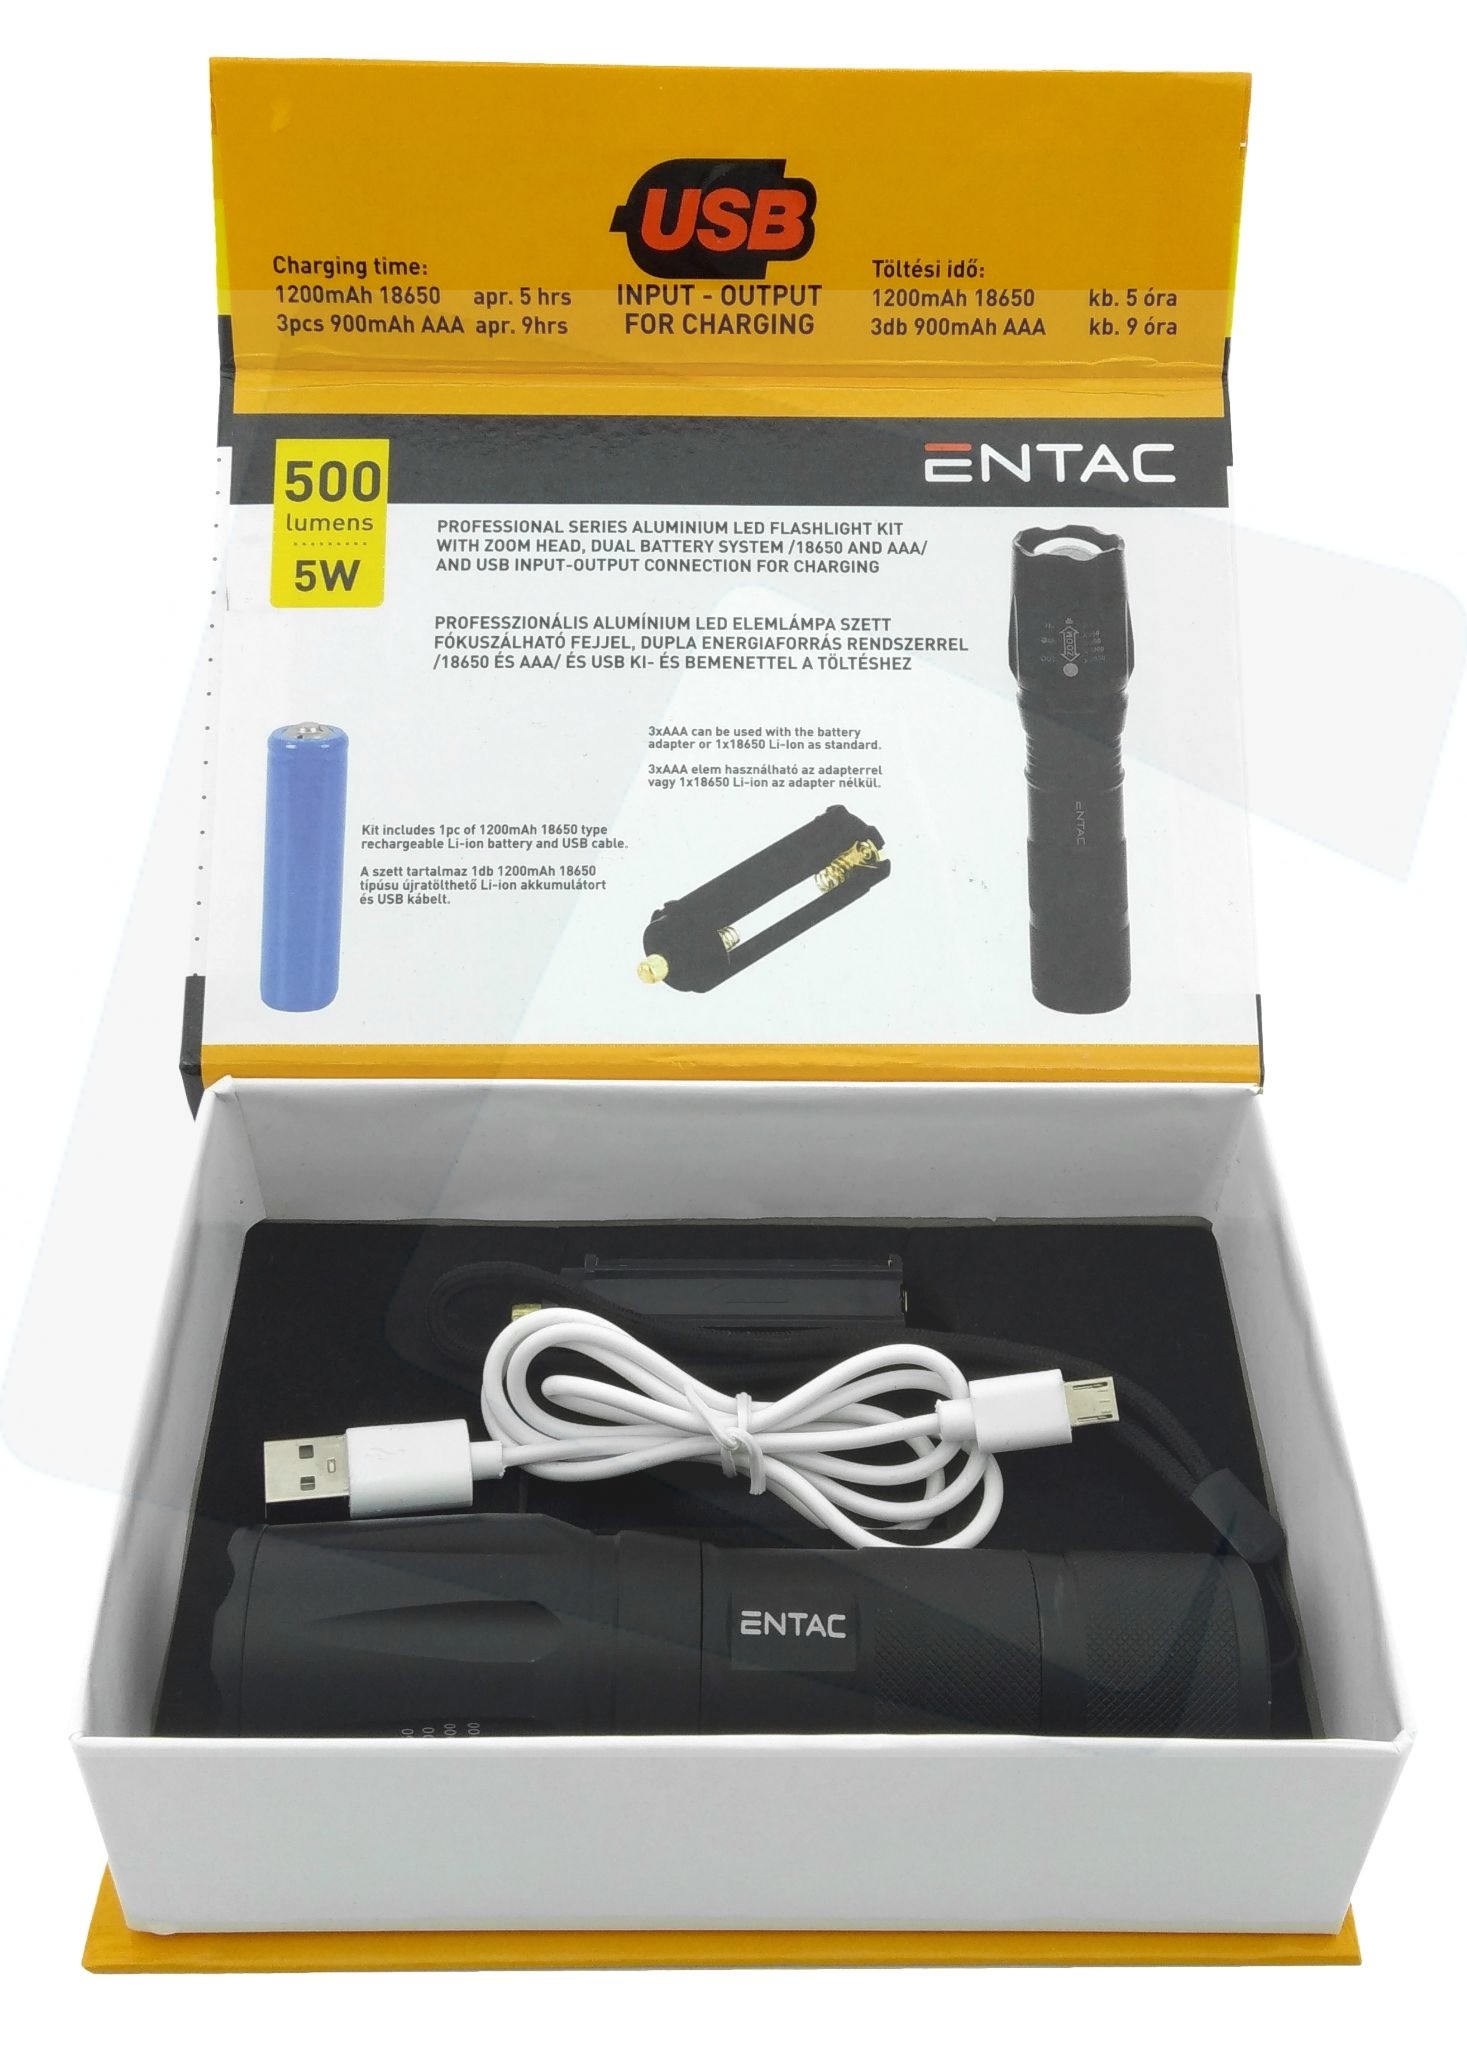 Elemlámpa   5W   500lm   USB   tölthető   Entac